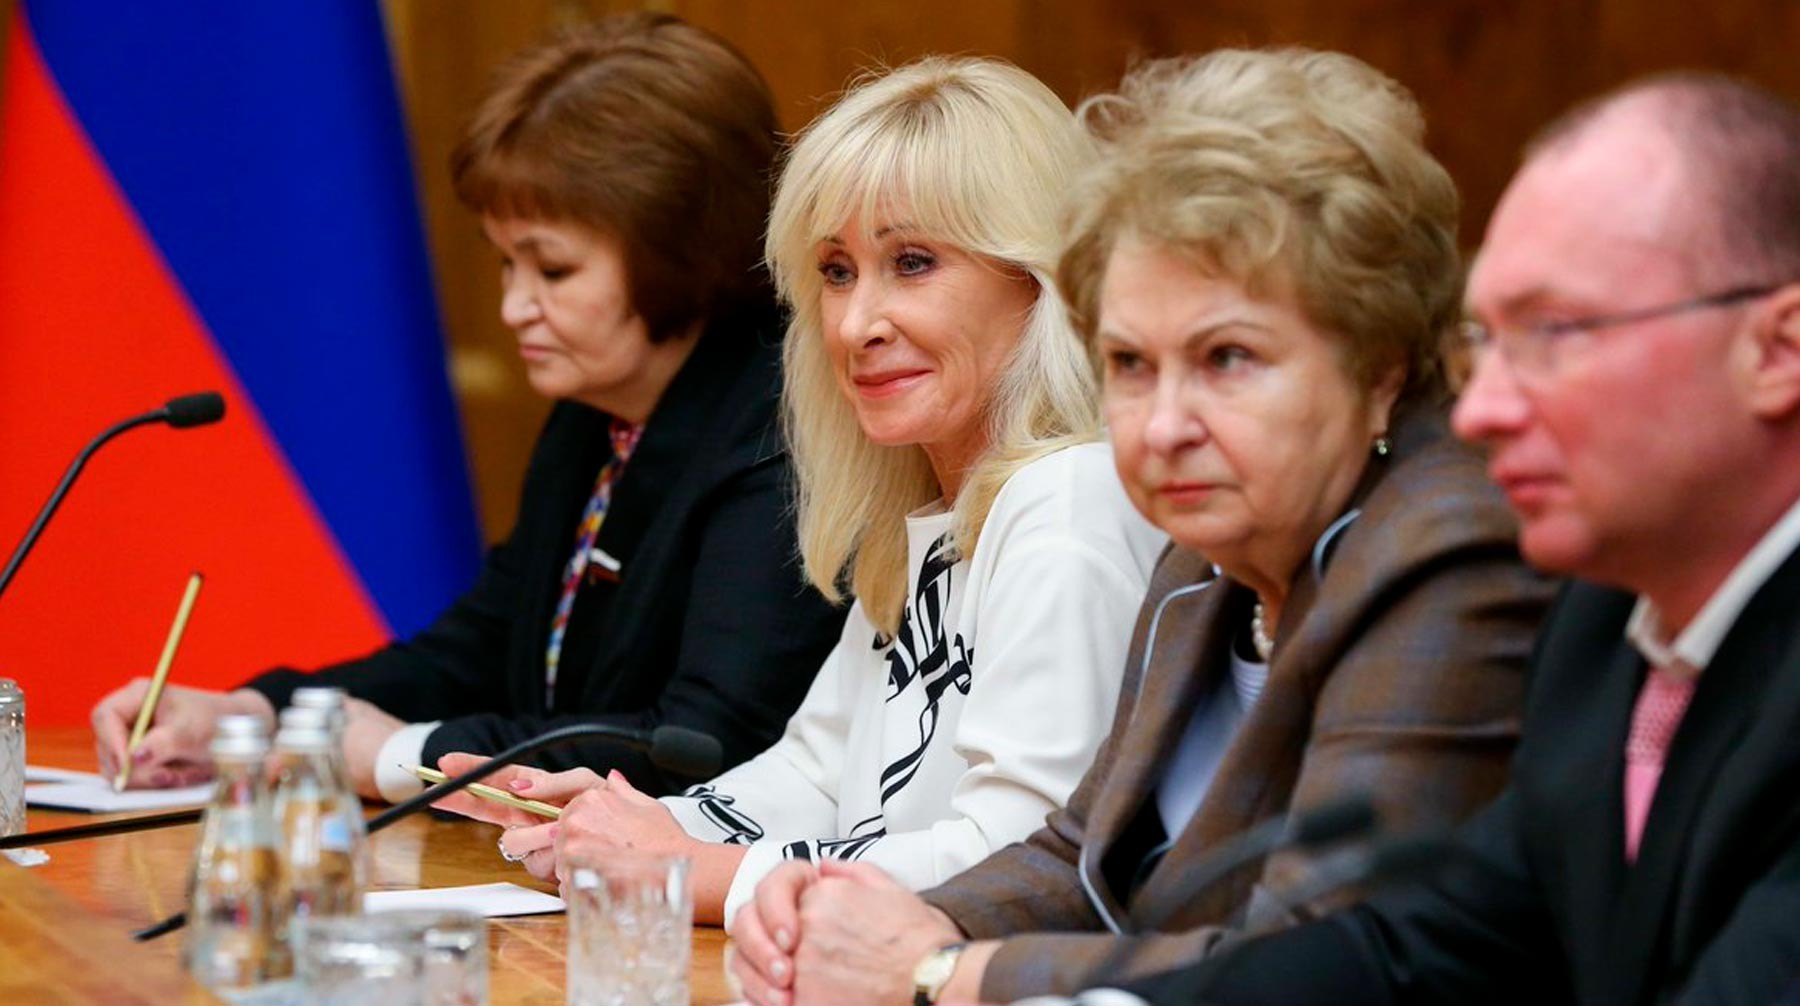 Dailystorm - «Сверхцинично и абсурдно»: защитницы прав женщин раскритиковали предложение Кузнецовой об абортах